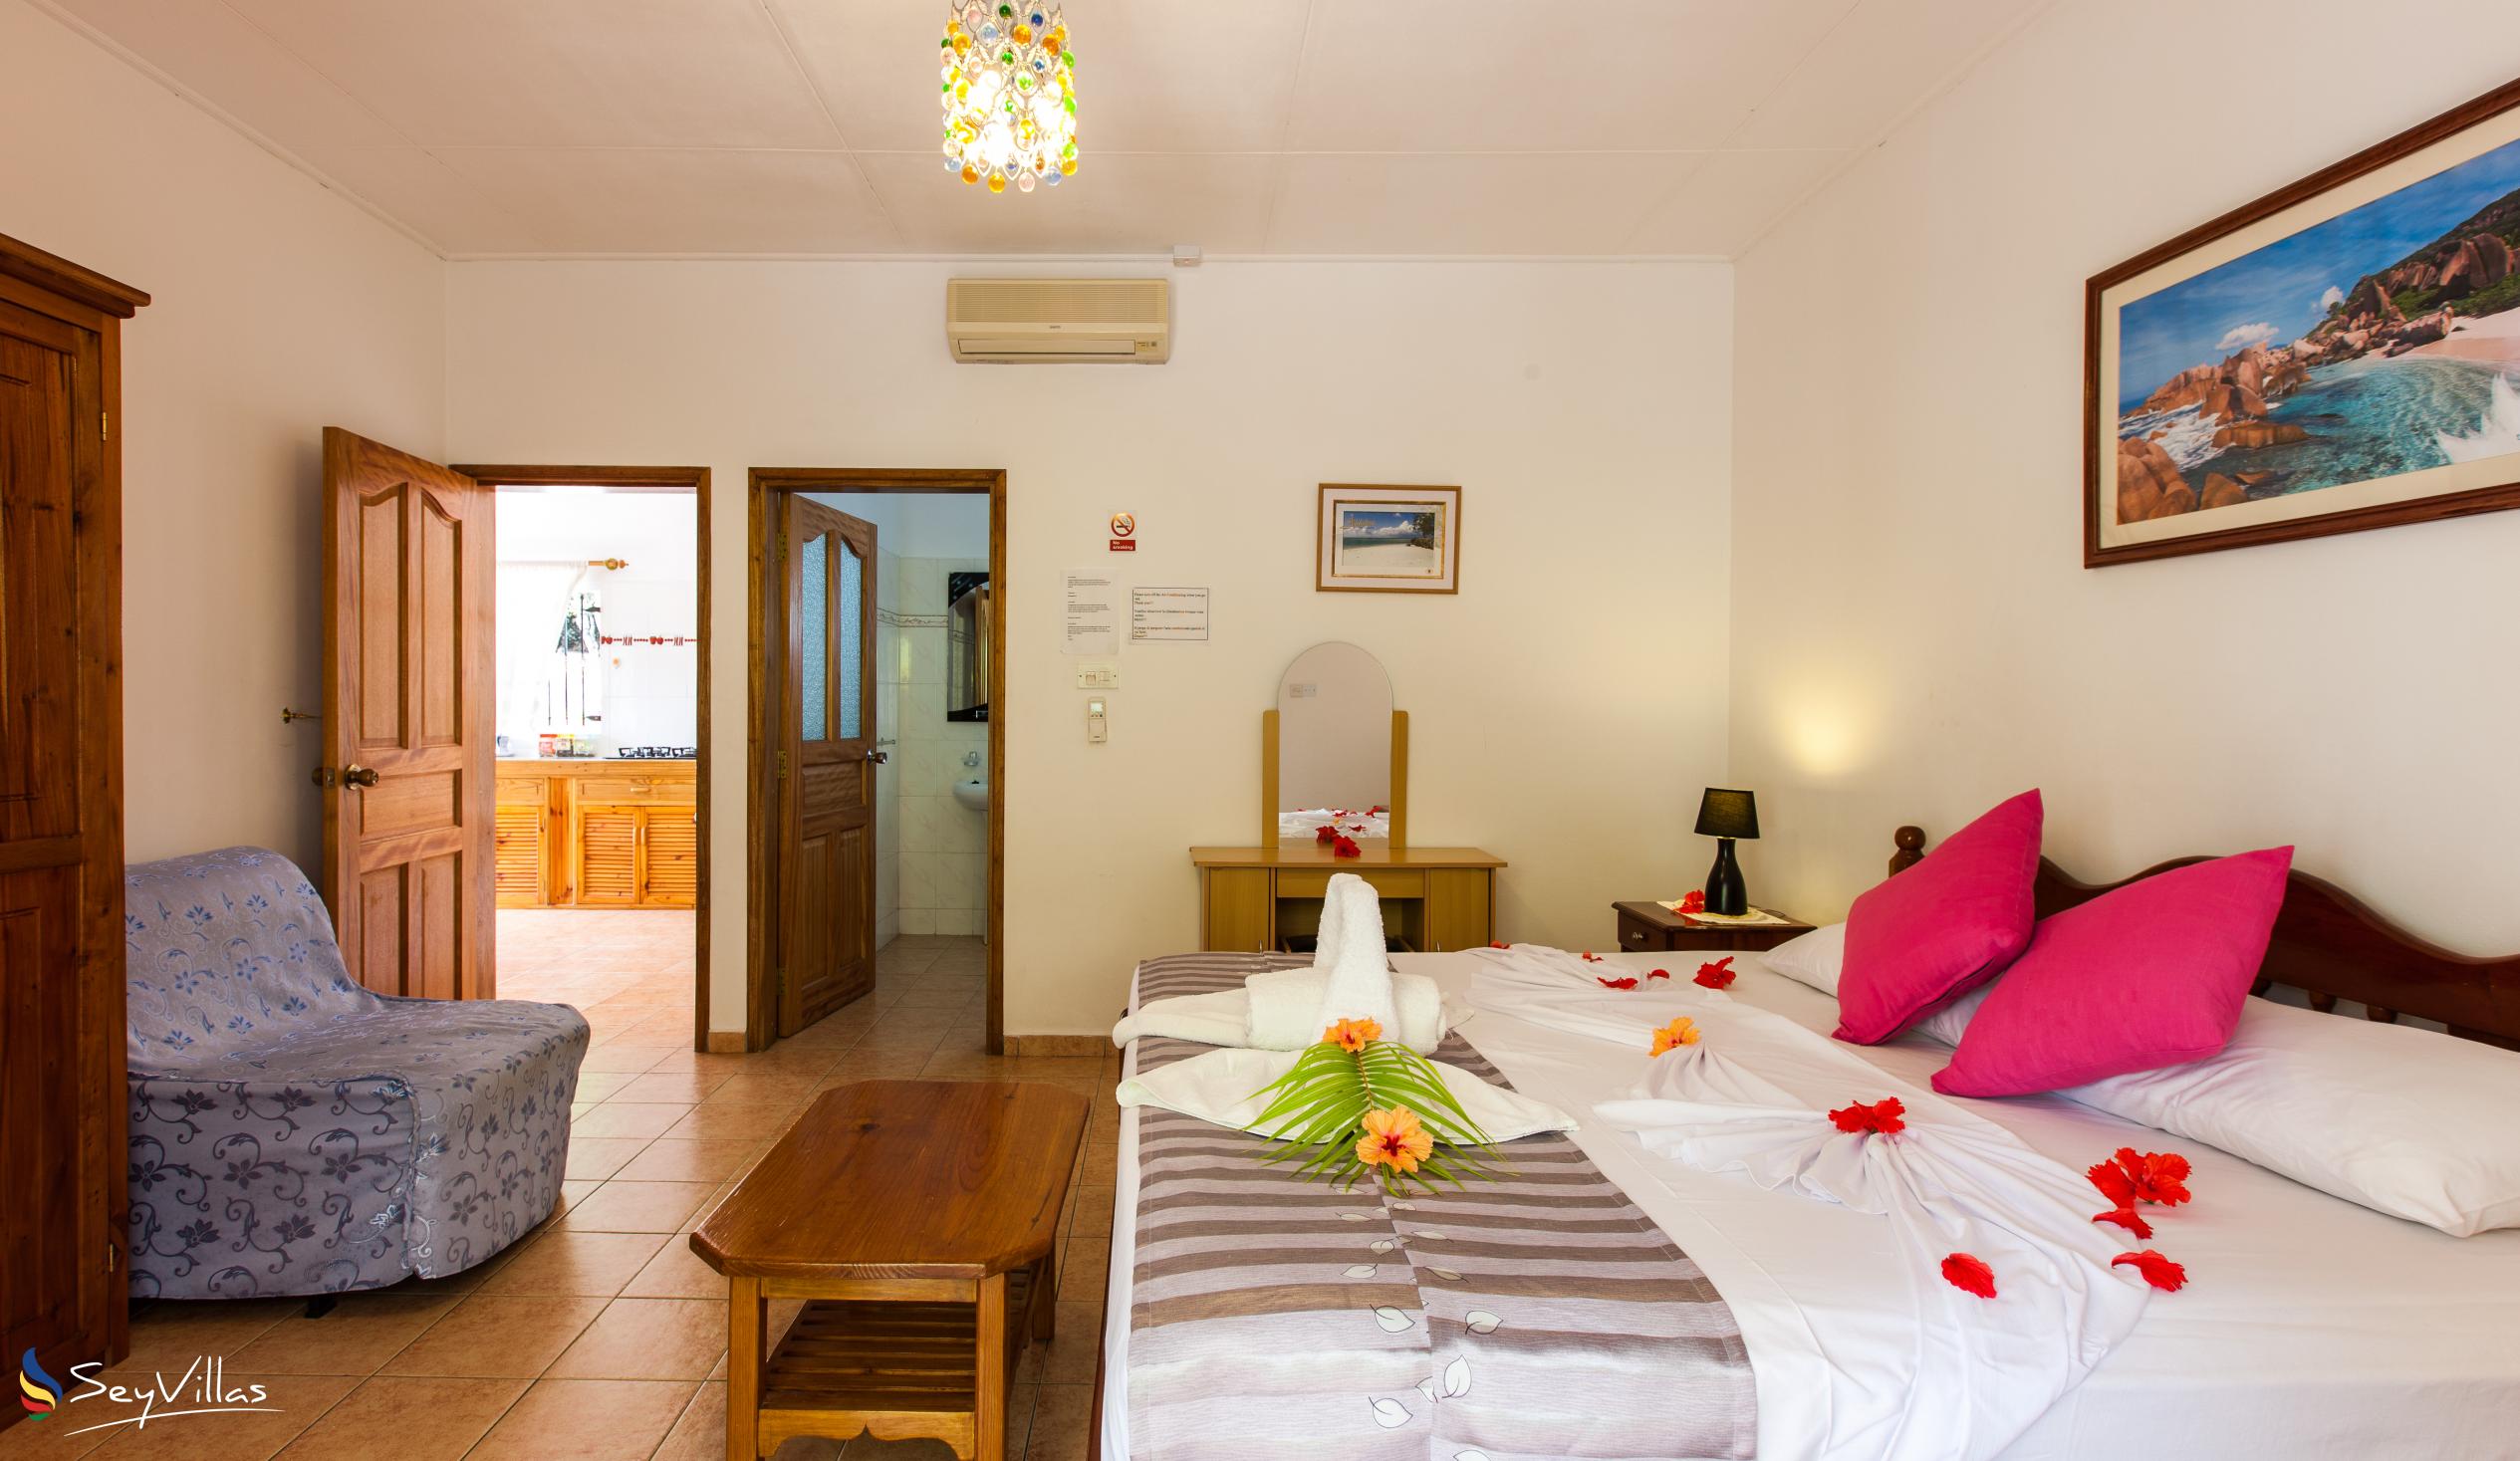 Photo 58: Acquario Villa - 1-Bedroom Apartment - Praslin (Seychelles)